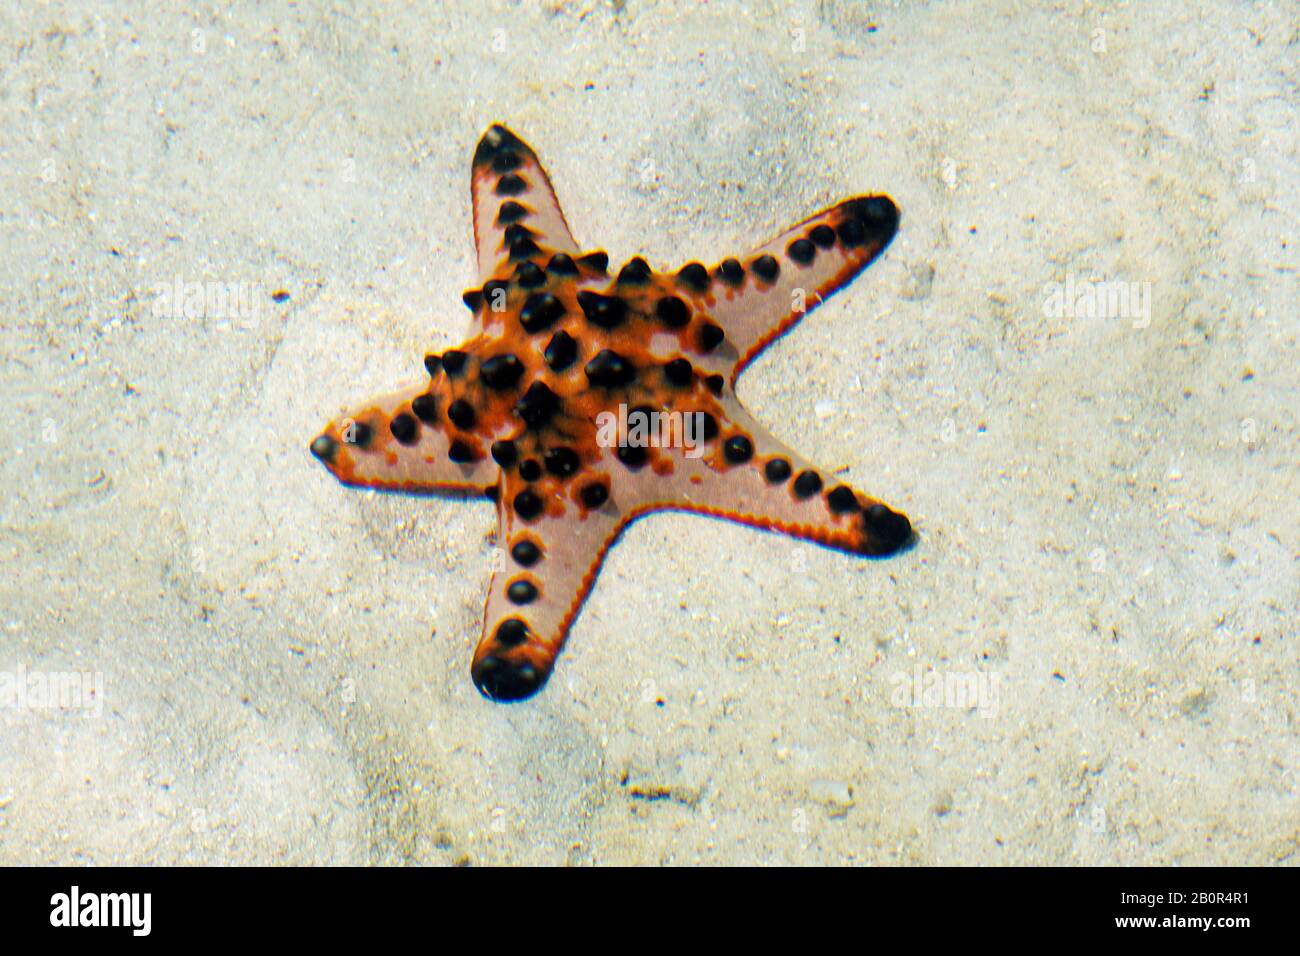 Chocolate chip sea star, Protoreaster nodosus, on sand, Kapalai, Malaysia Stock Photo